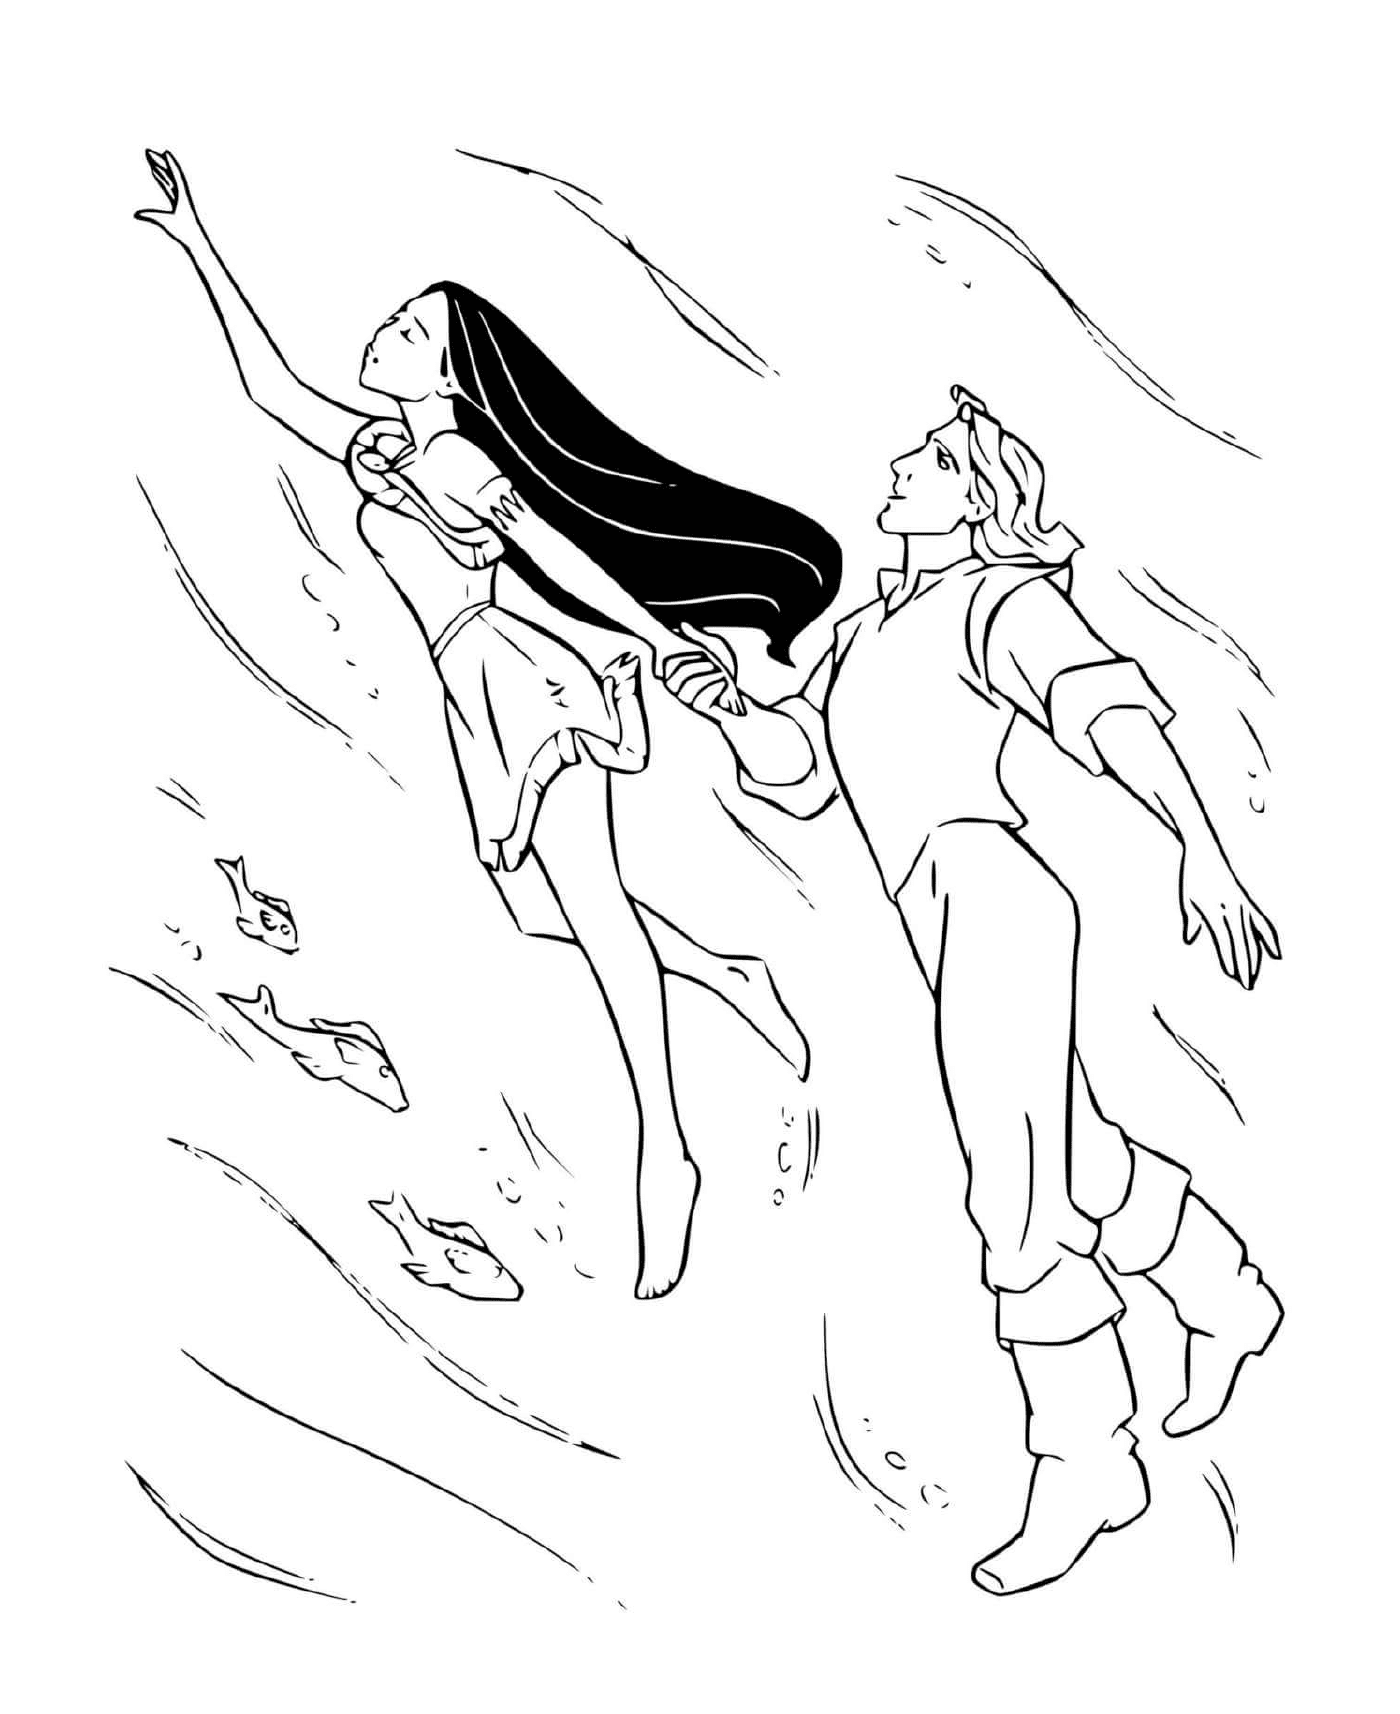 Pocahontas evadee de la mer